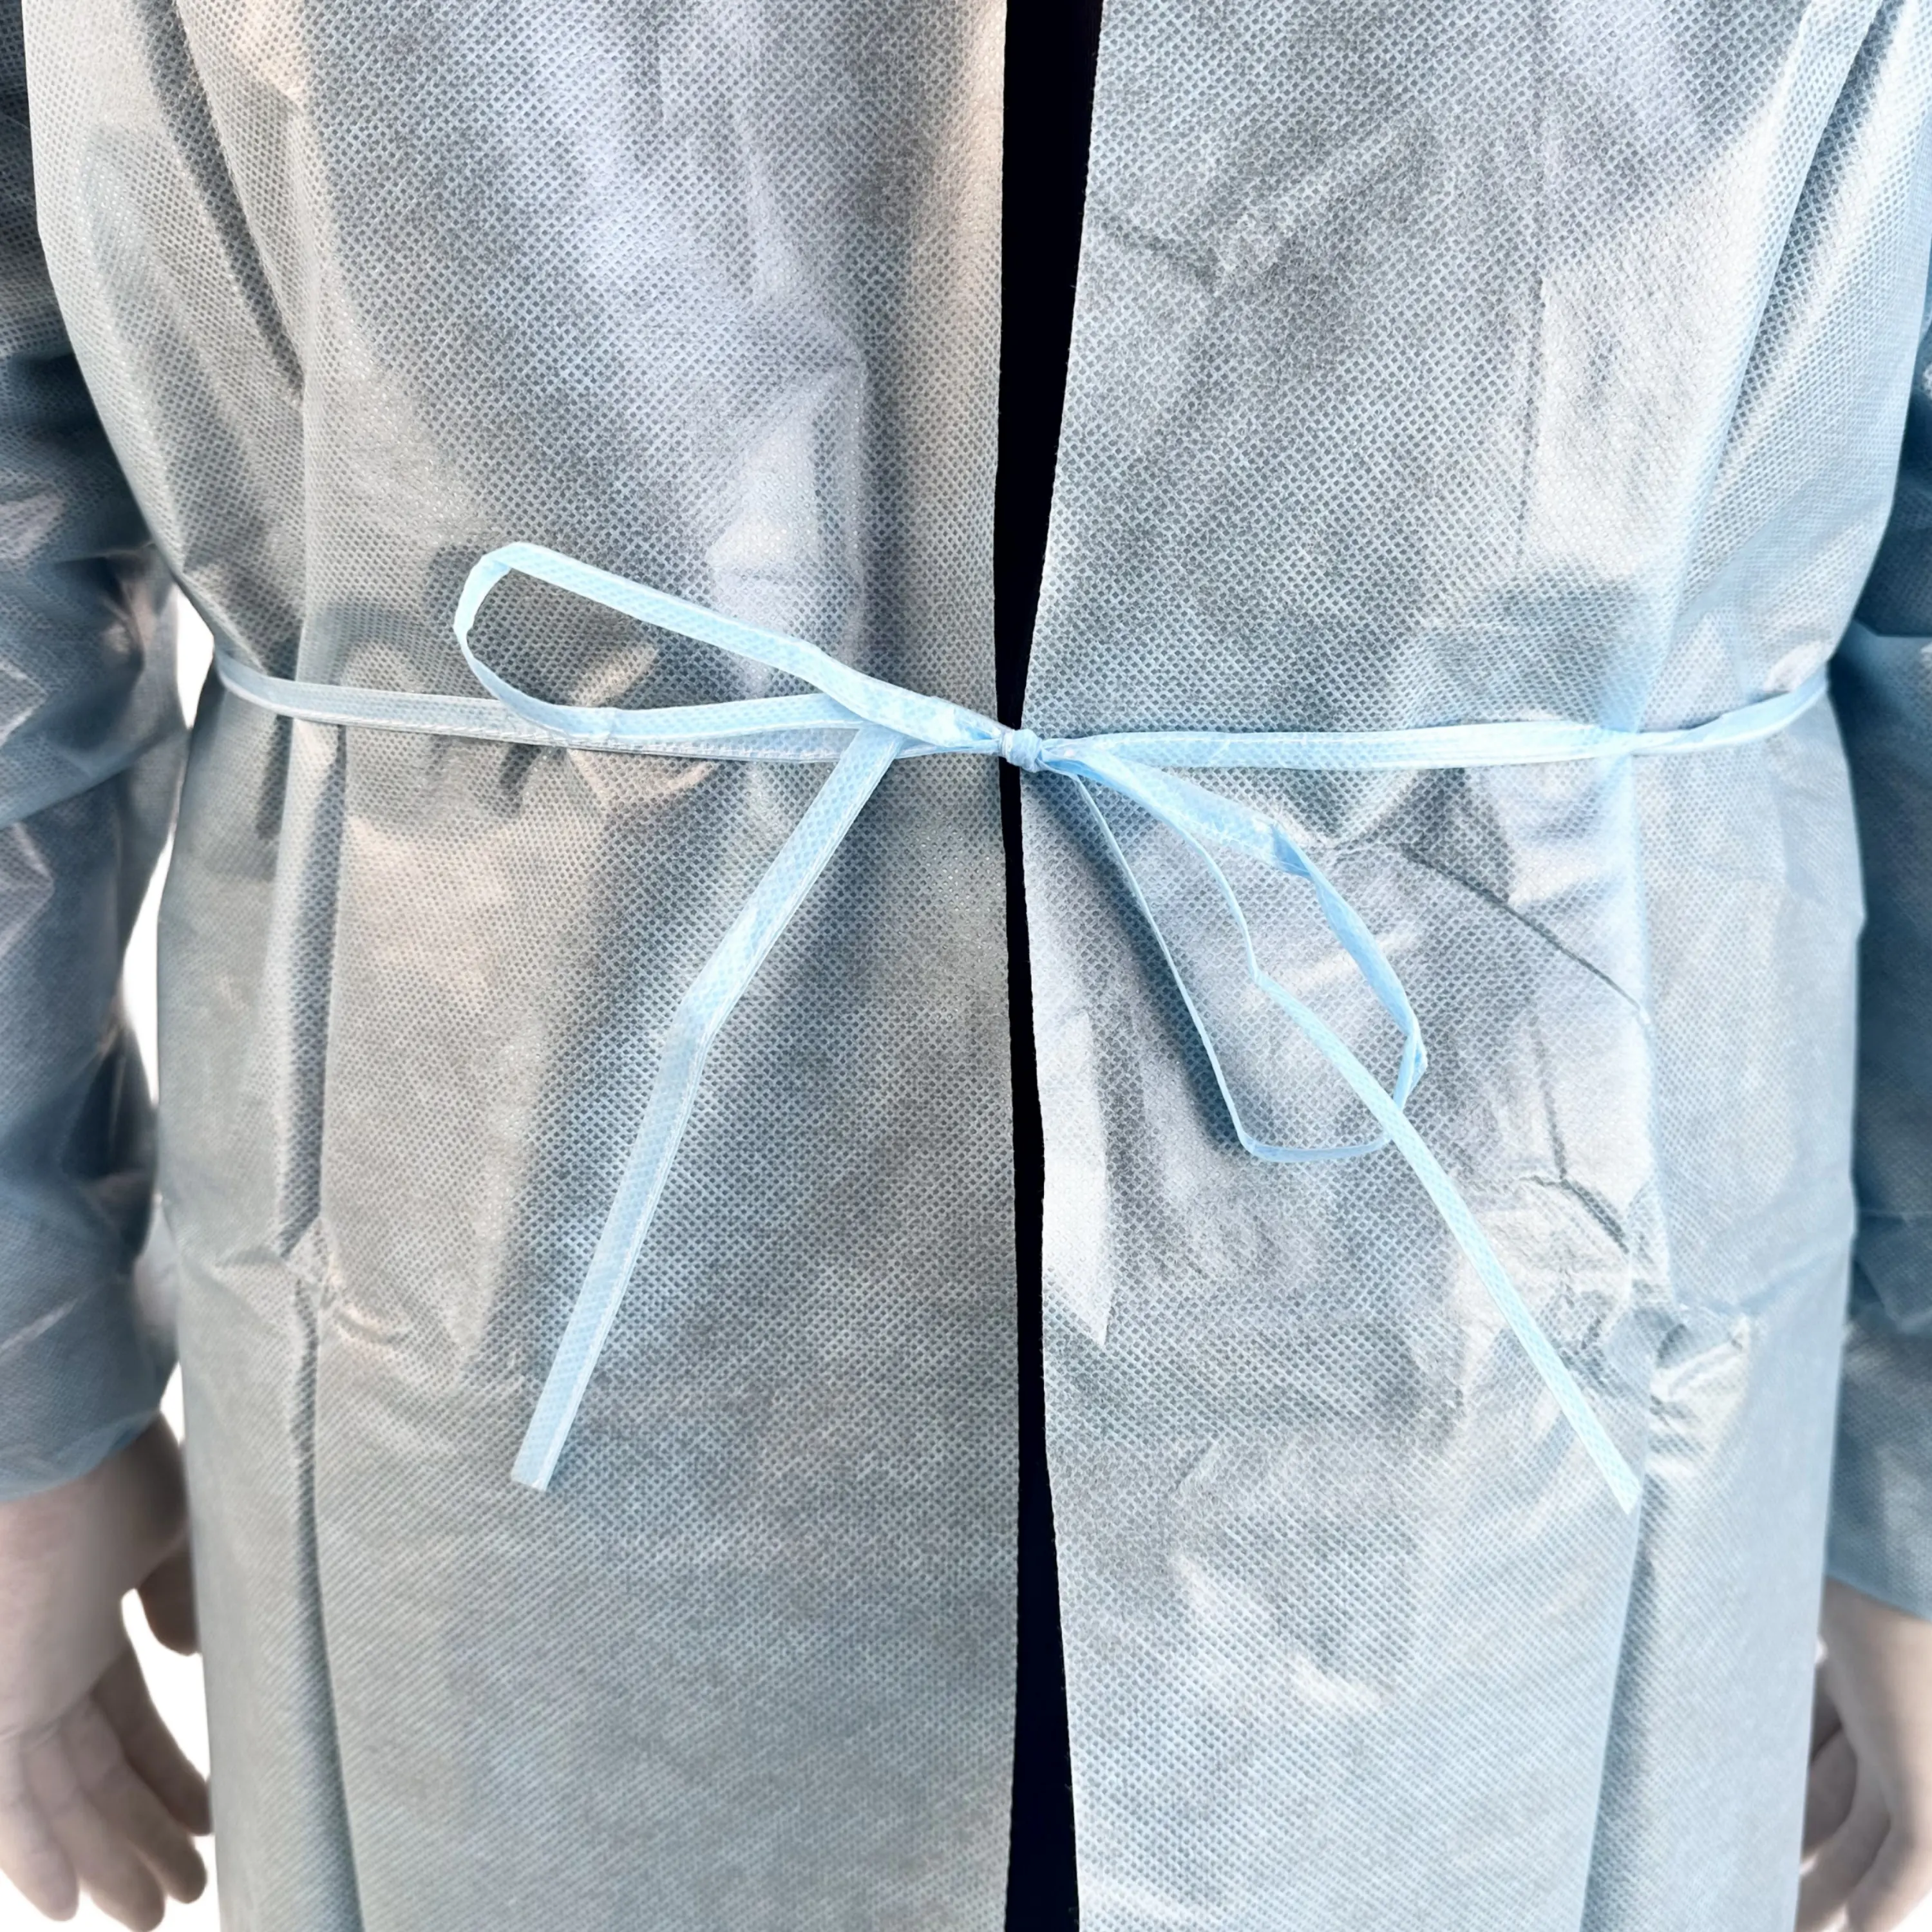 Seviye 4 takviyeli tek kullanımlık steril cerrahi nefes alabilir izolasyon elbiseleri doktor ve hemşireler için